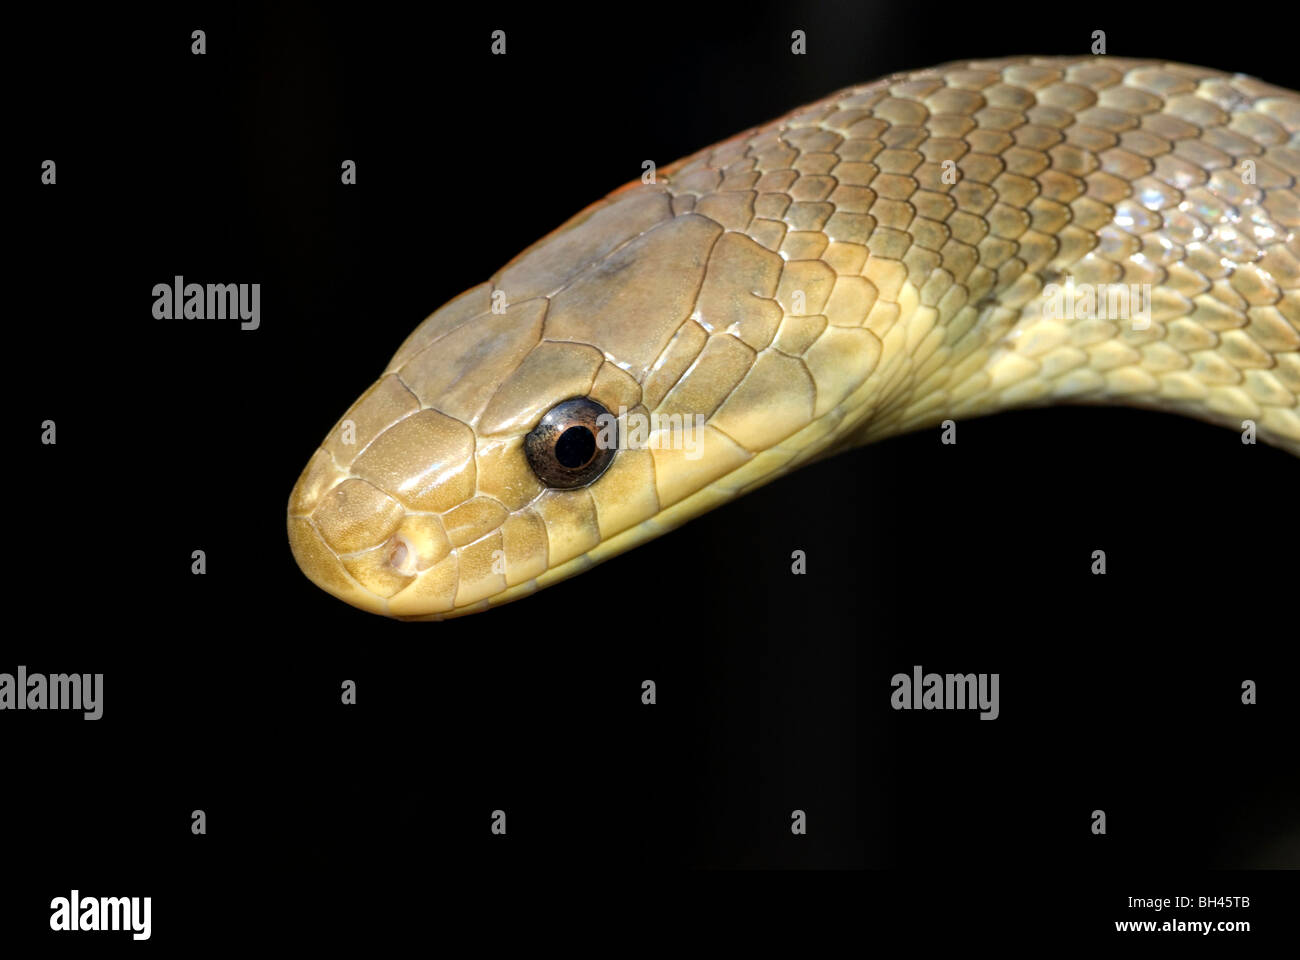 Aesulapian rat snake (Elaphe longissima). Close up of head and eye. Stock Photo